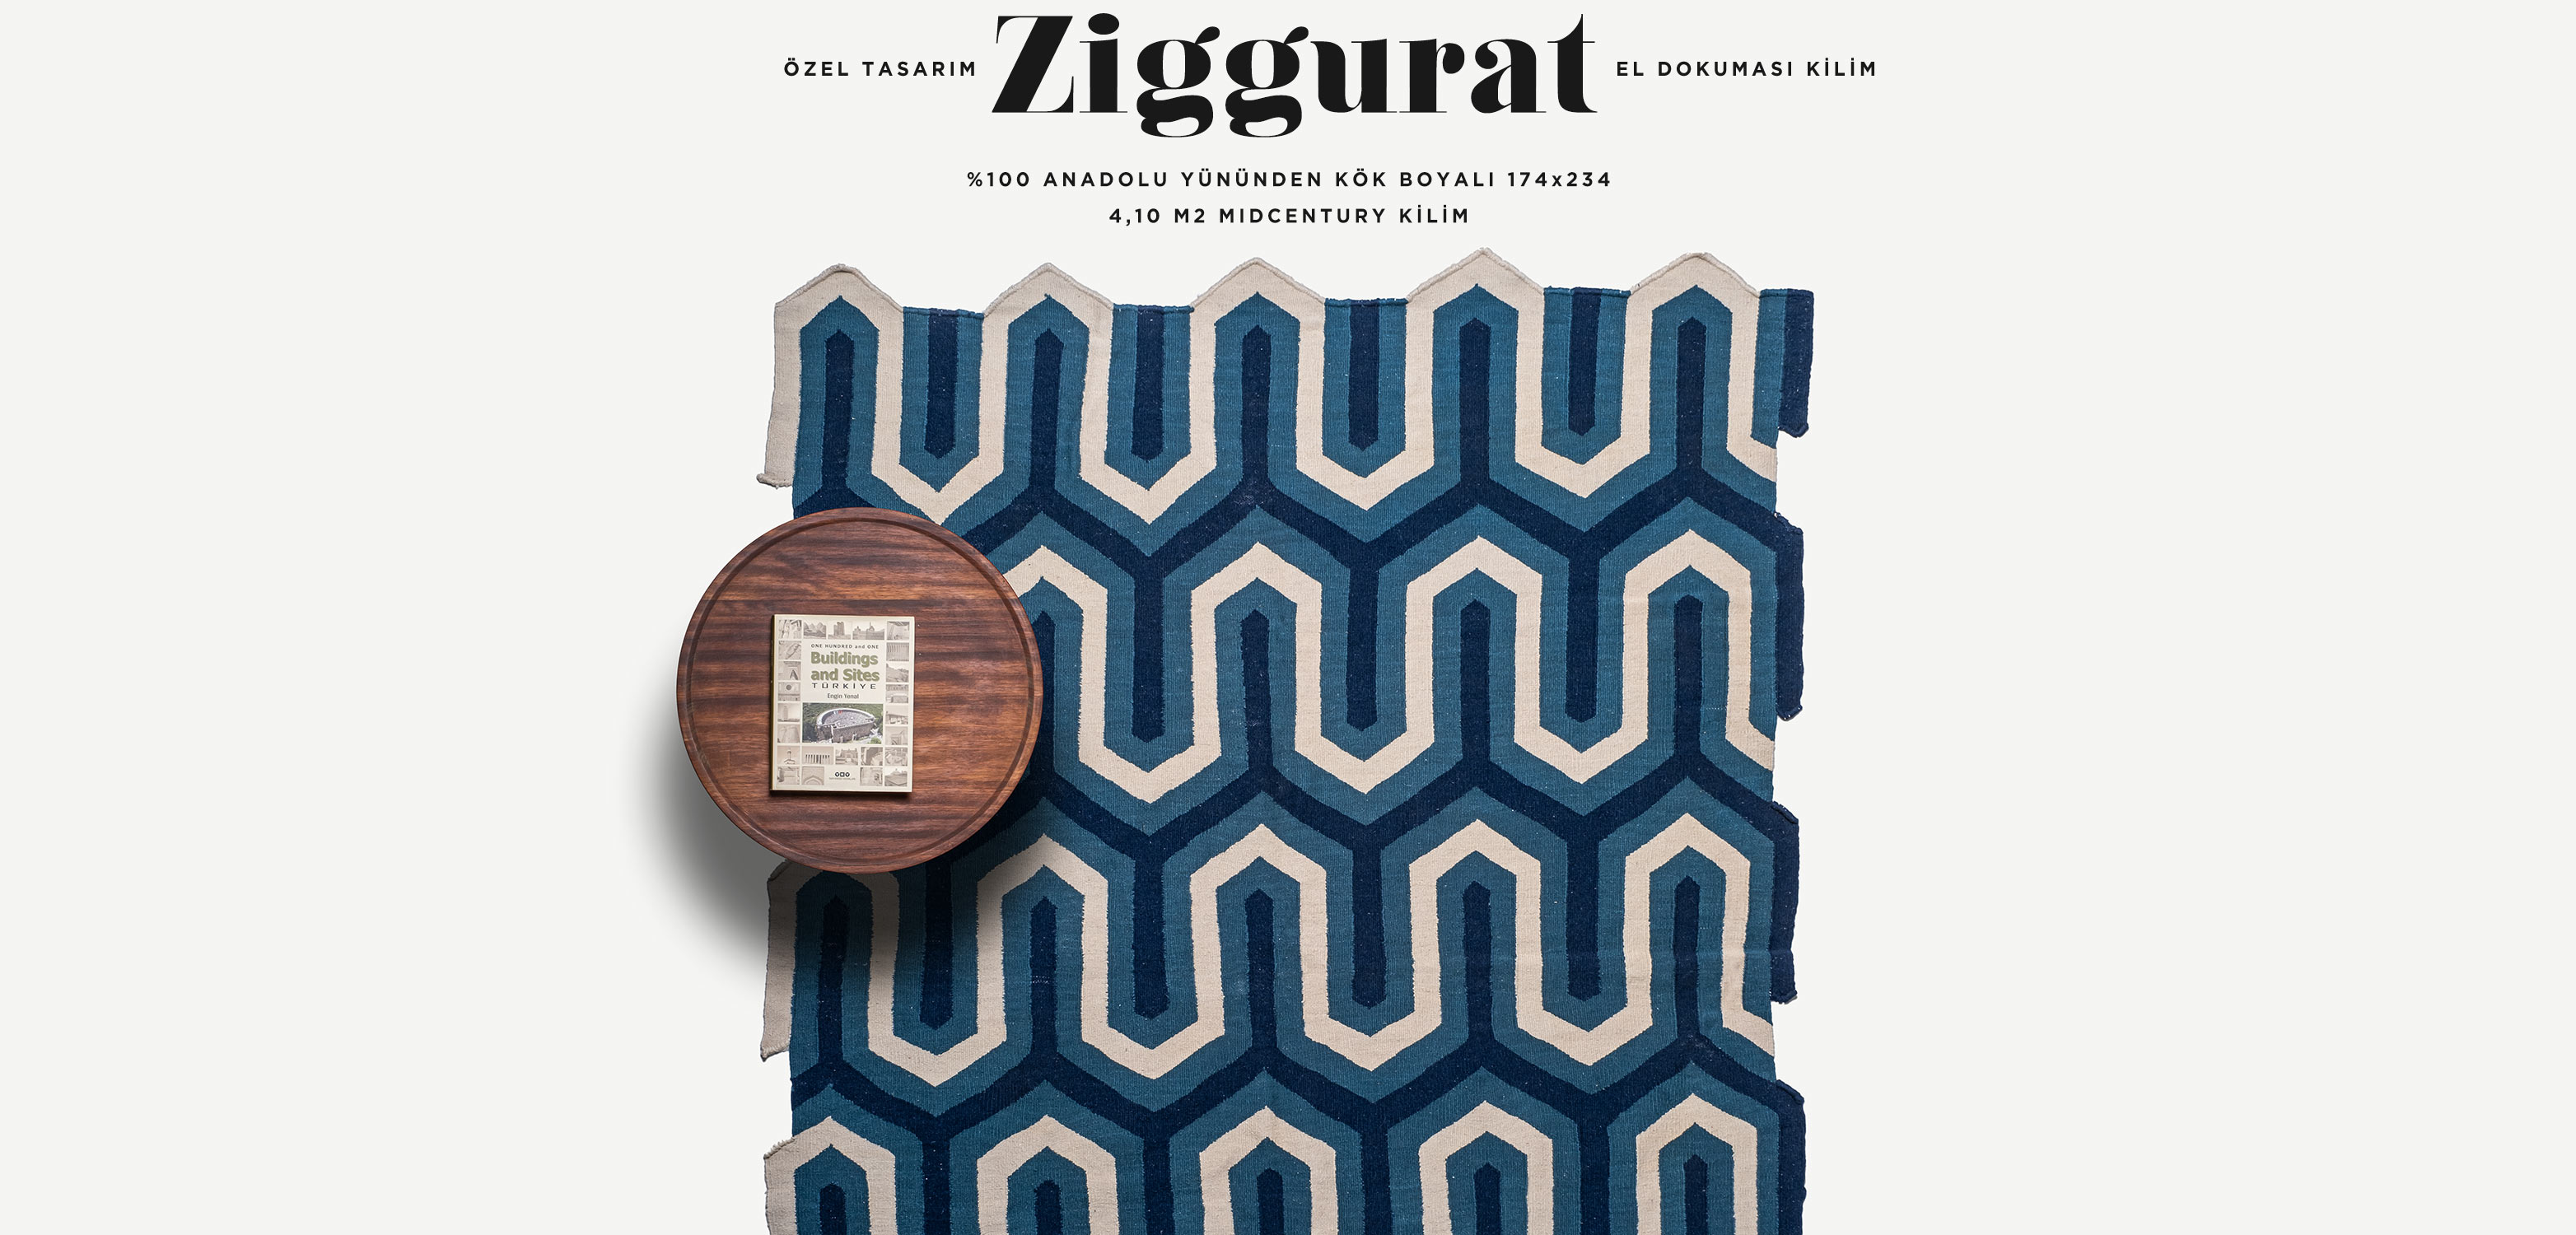 Ziggurat El Dokuması Kilim 174x234, 4,10 m2'in resmi